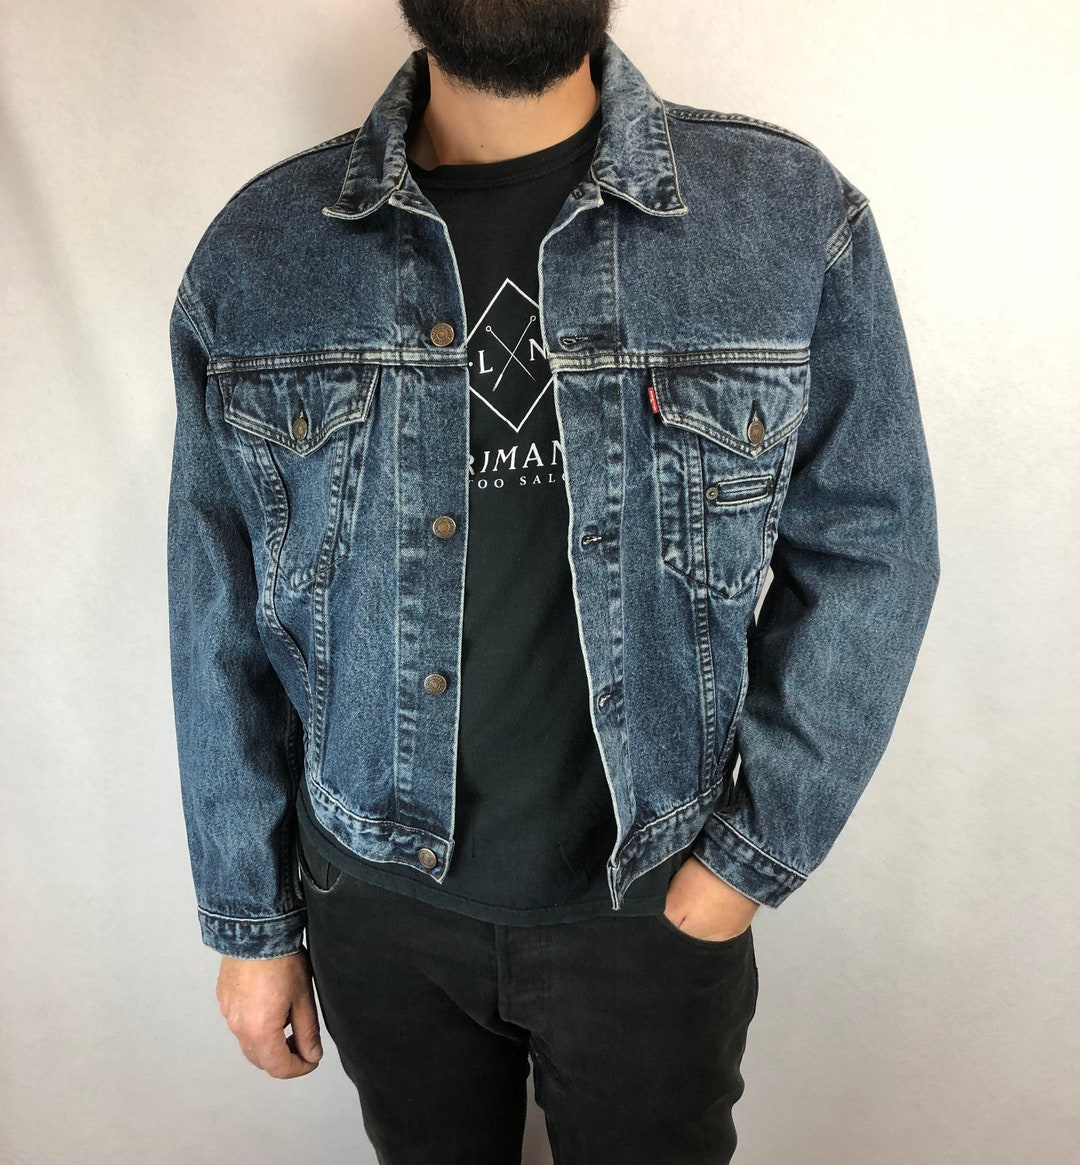 Levi's Denim Denim Jacket Brand Style Vintage 90s - Etsy